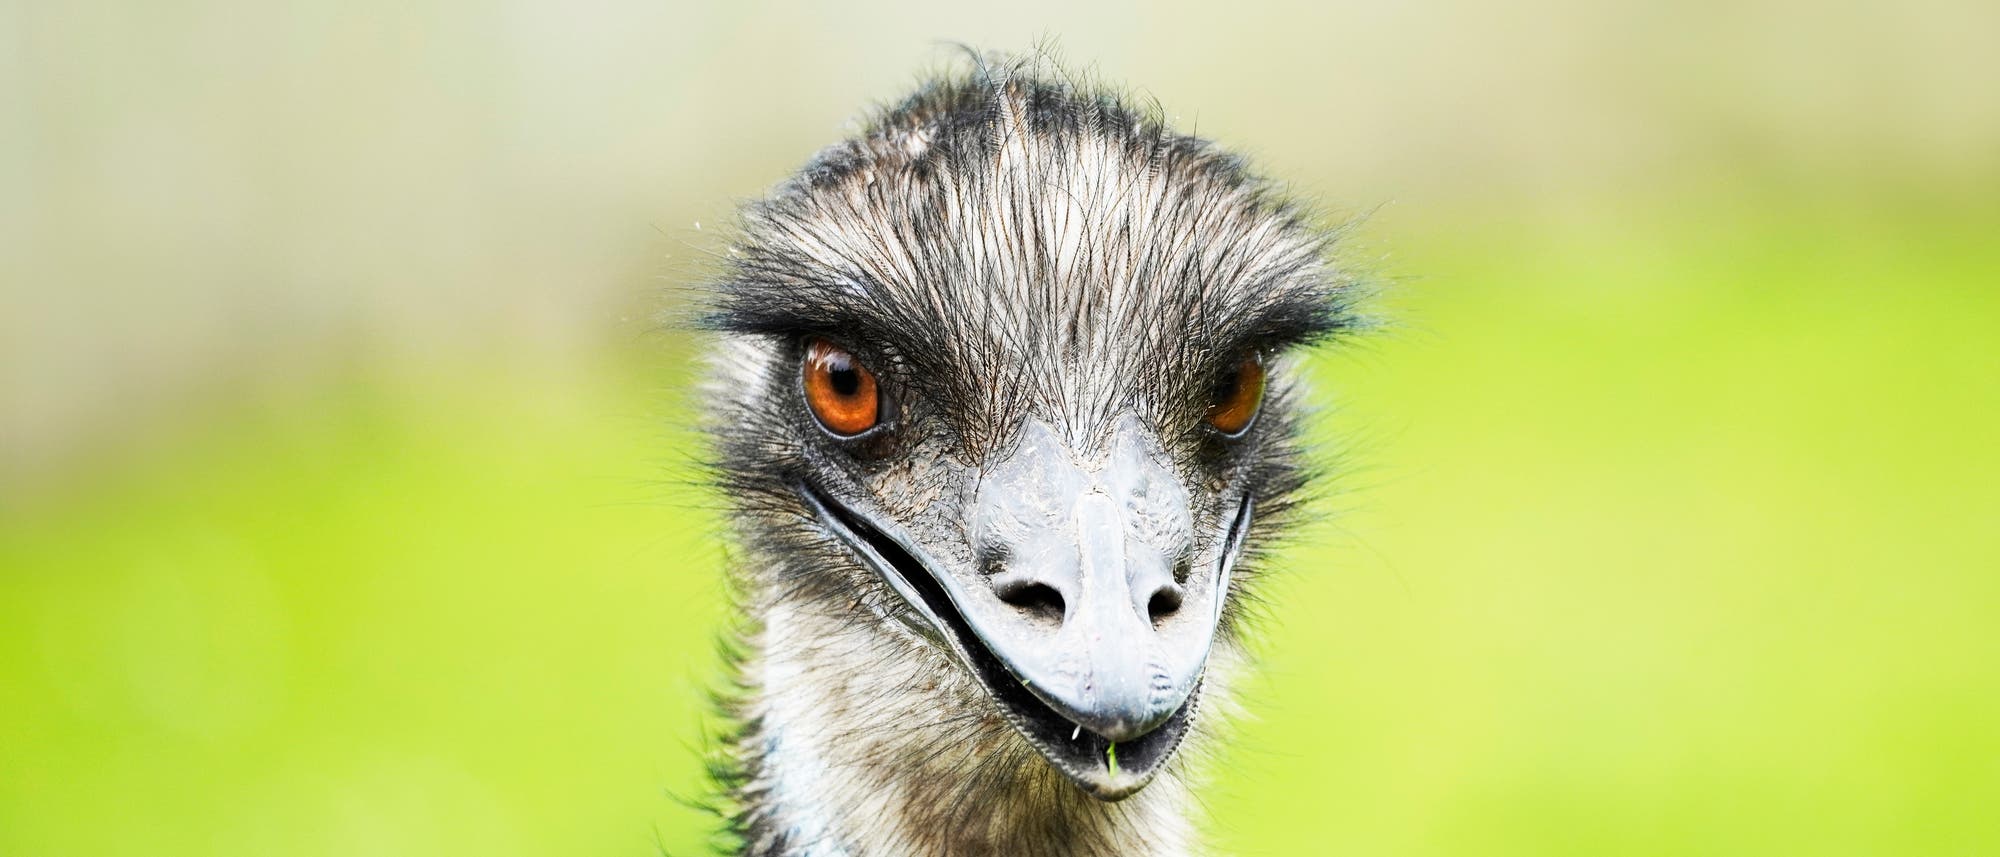 Kopf eines Großen Emus.